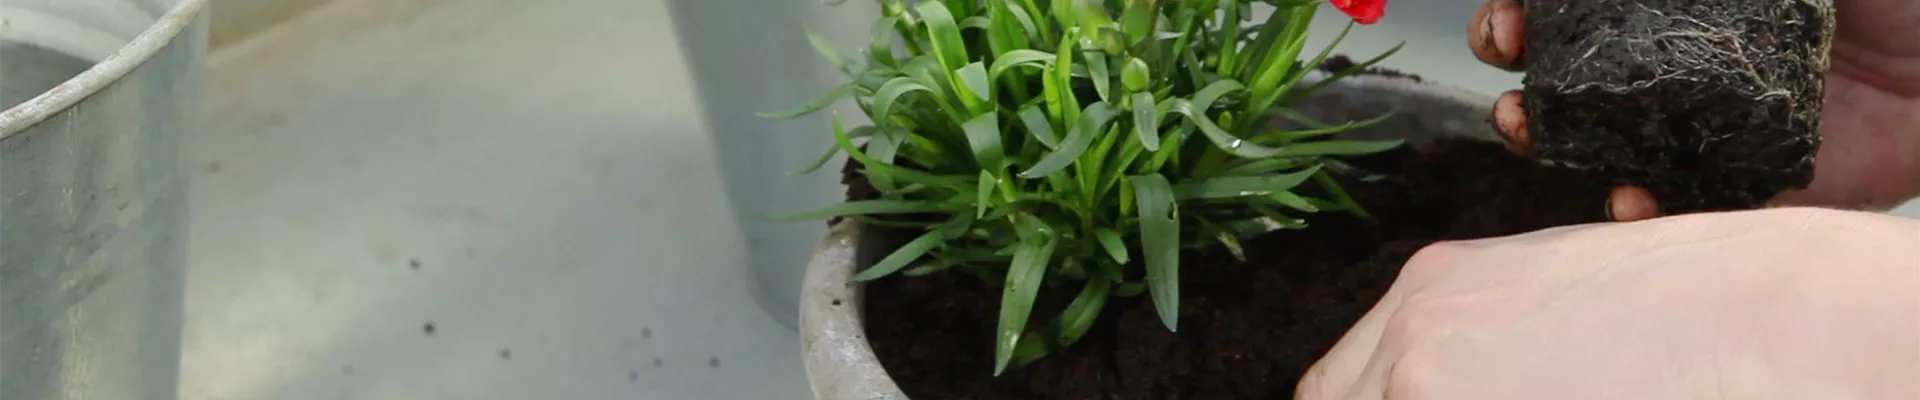 Nelken - Einpflanzen in ein Gefäß (thumbnail).jpg